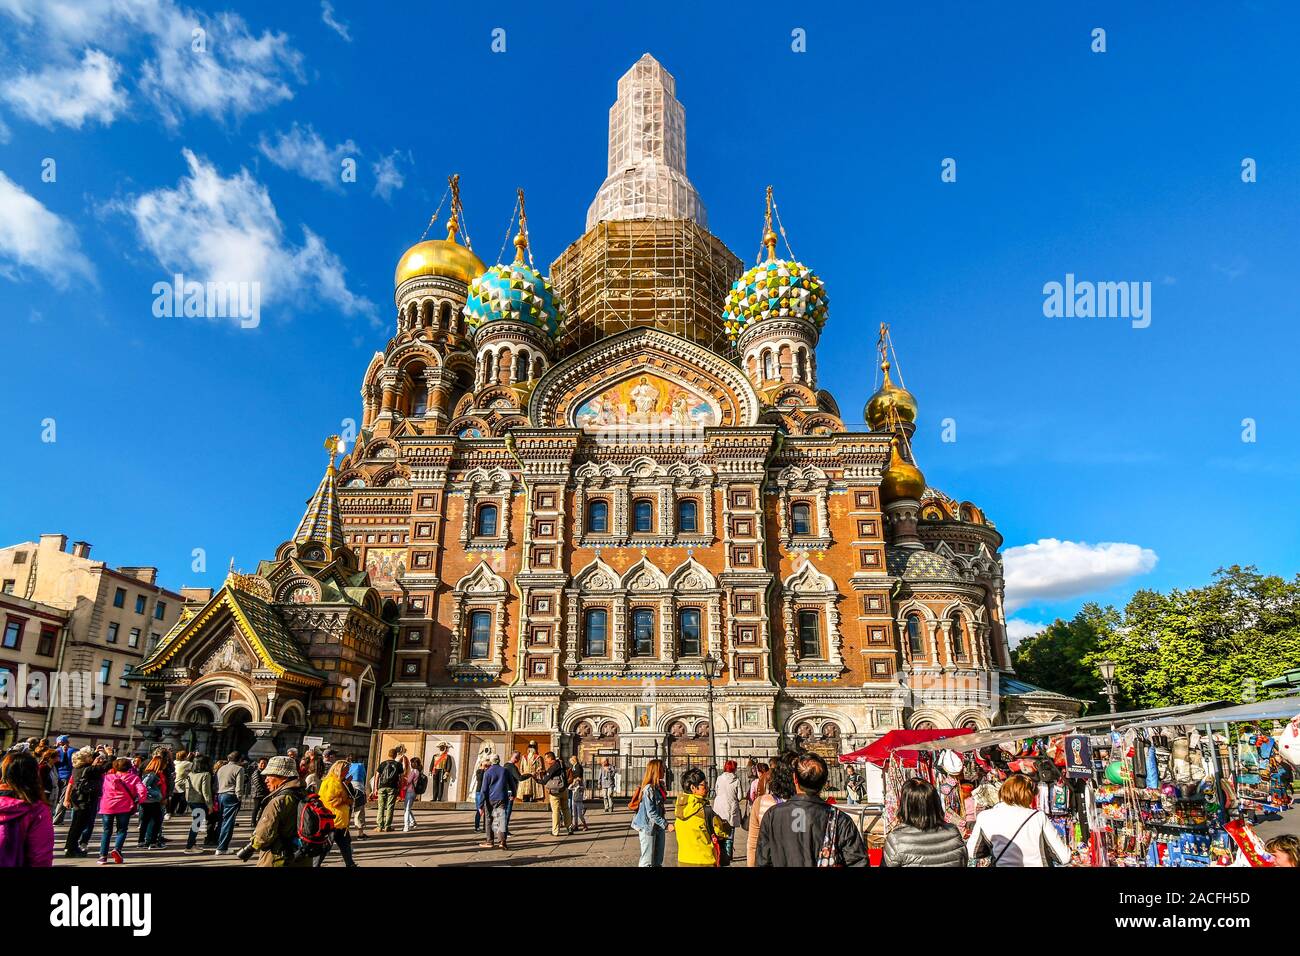 Les touristes se mêlent dans la place en face de la cité médiévale de dômes oignon et façade de l'Église du Sauveur sur le Sang Versé à Saint-Pétersbourg, en Russie. Banque D'Images